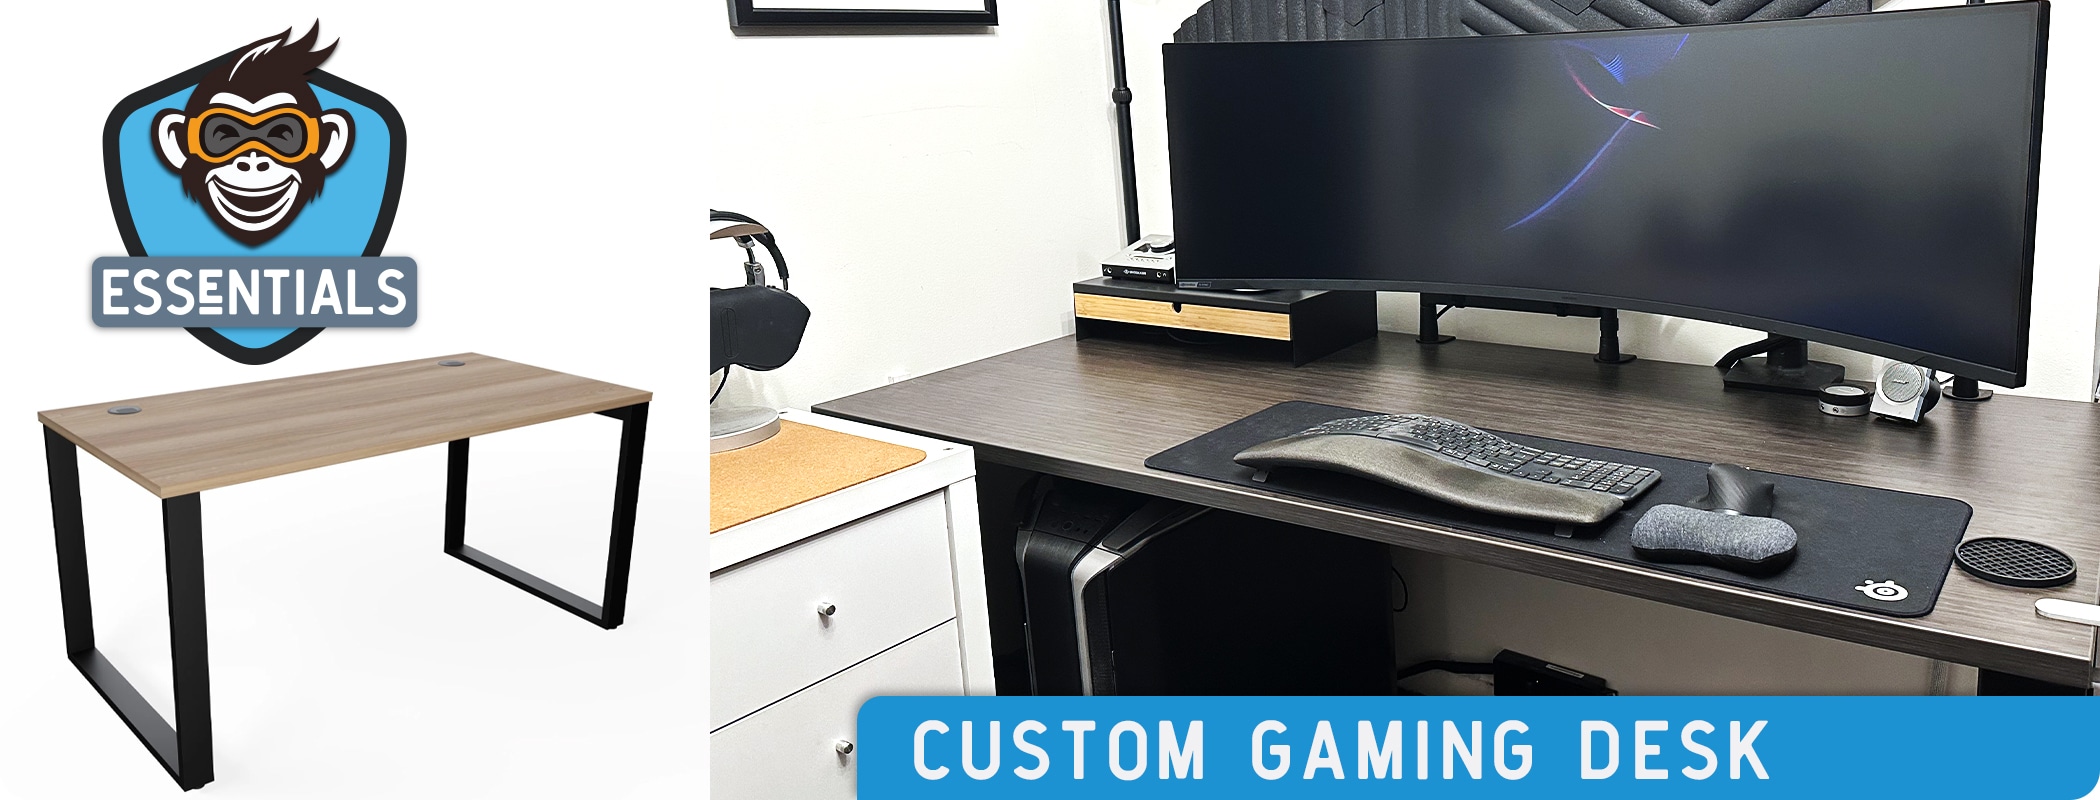 Essentials - Custom Gaming Desk